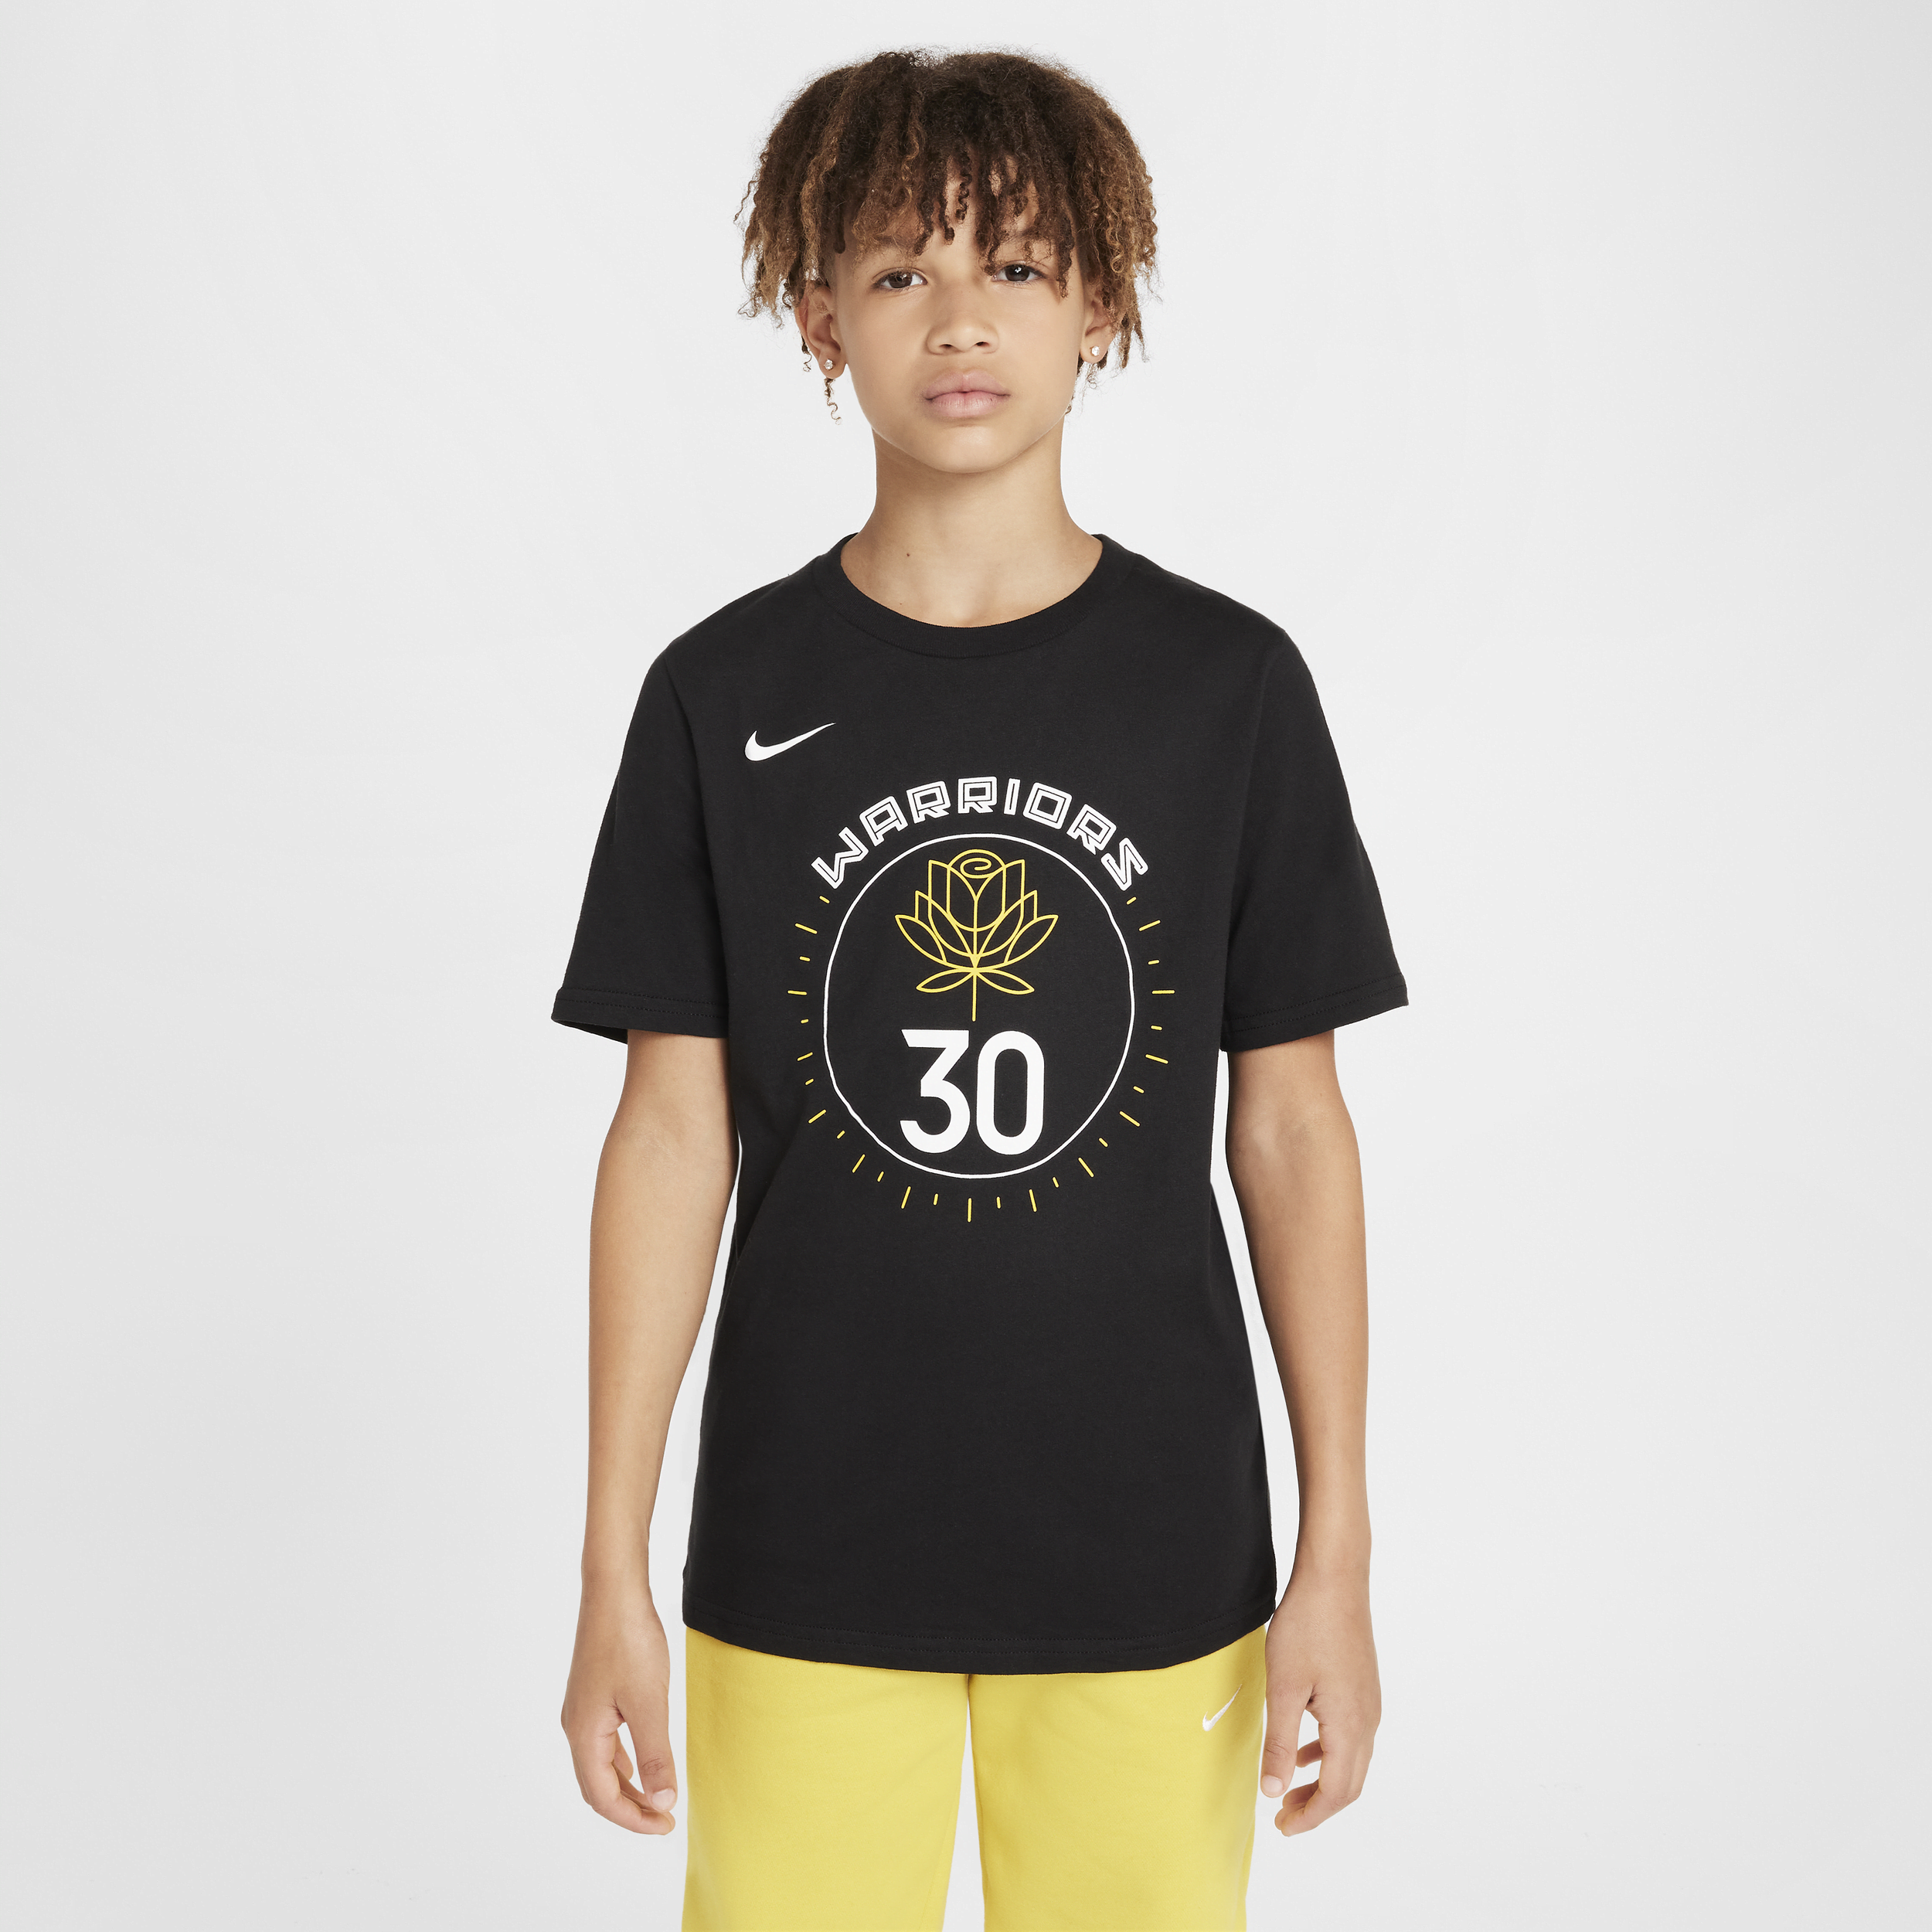 Golden State Warriors City Edition Nike NBA-shirt voor kids - Zwart